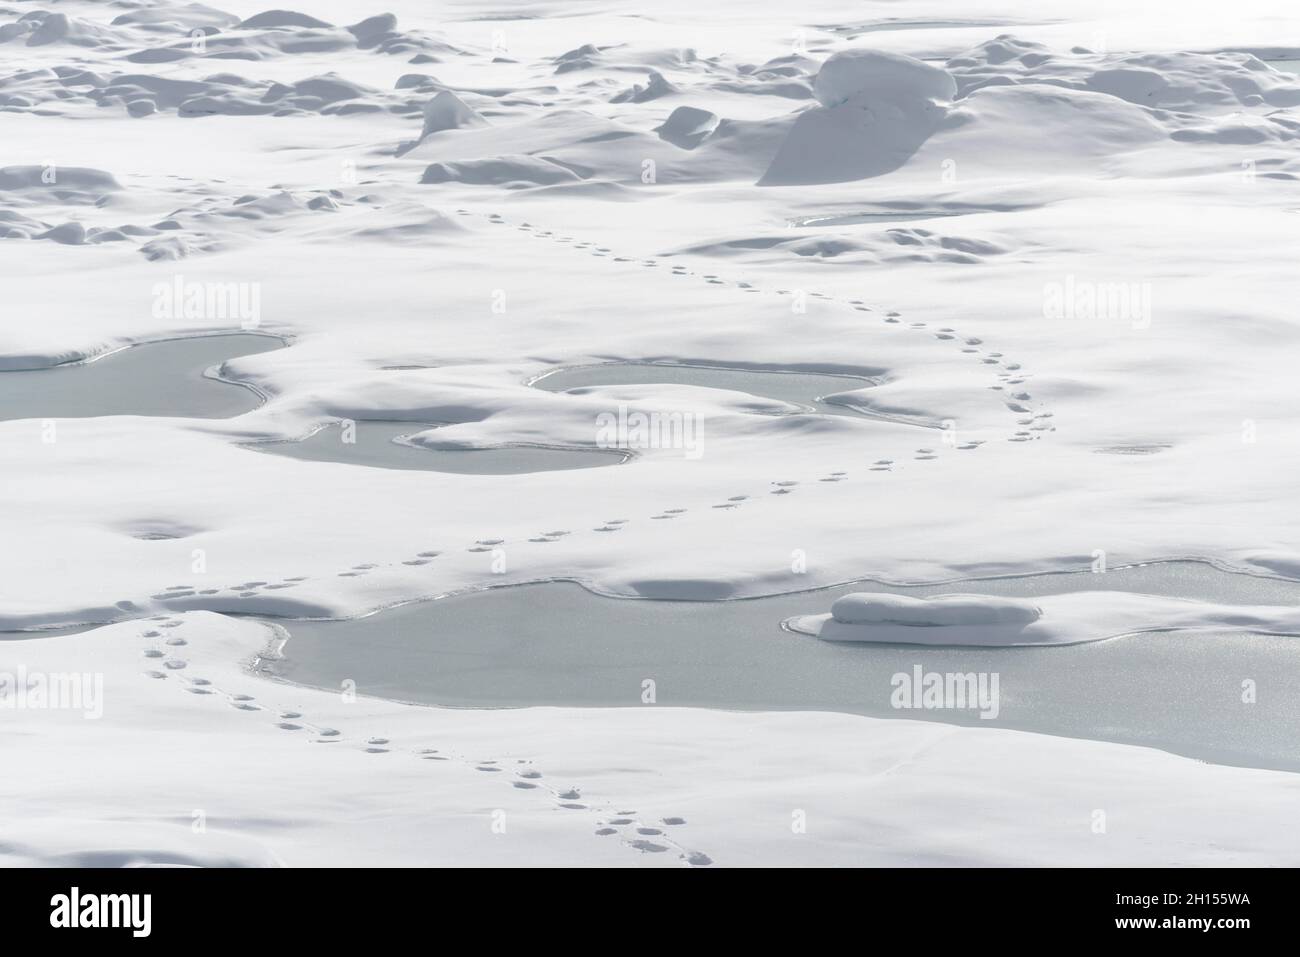 La calotte glaciaire arctique au nord de Svalbard avec les empreintes d'un ours polaire laissant des traces dans la neige.Svalbard, Norvège Banque D'Images